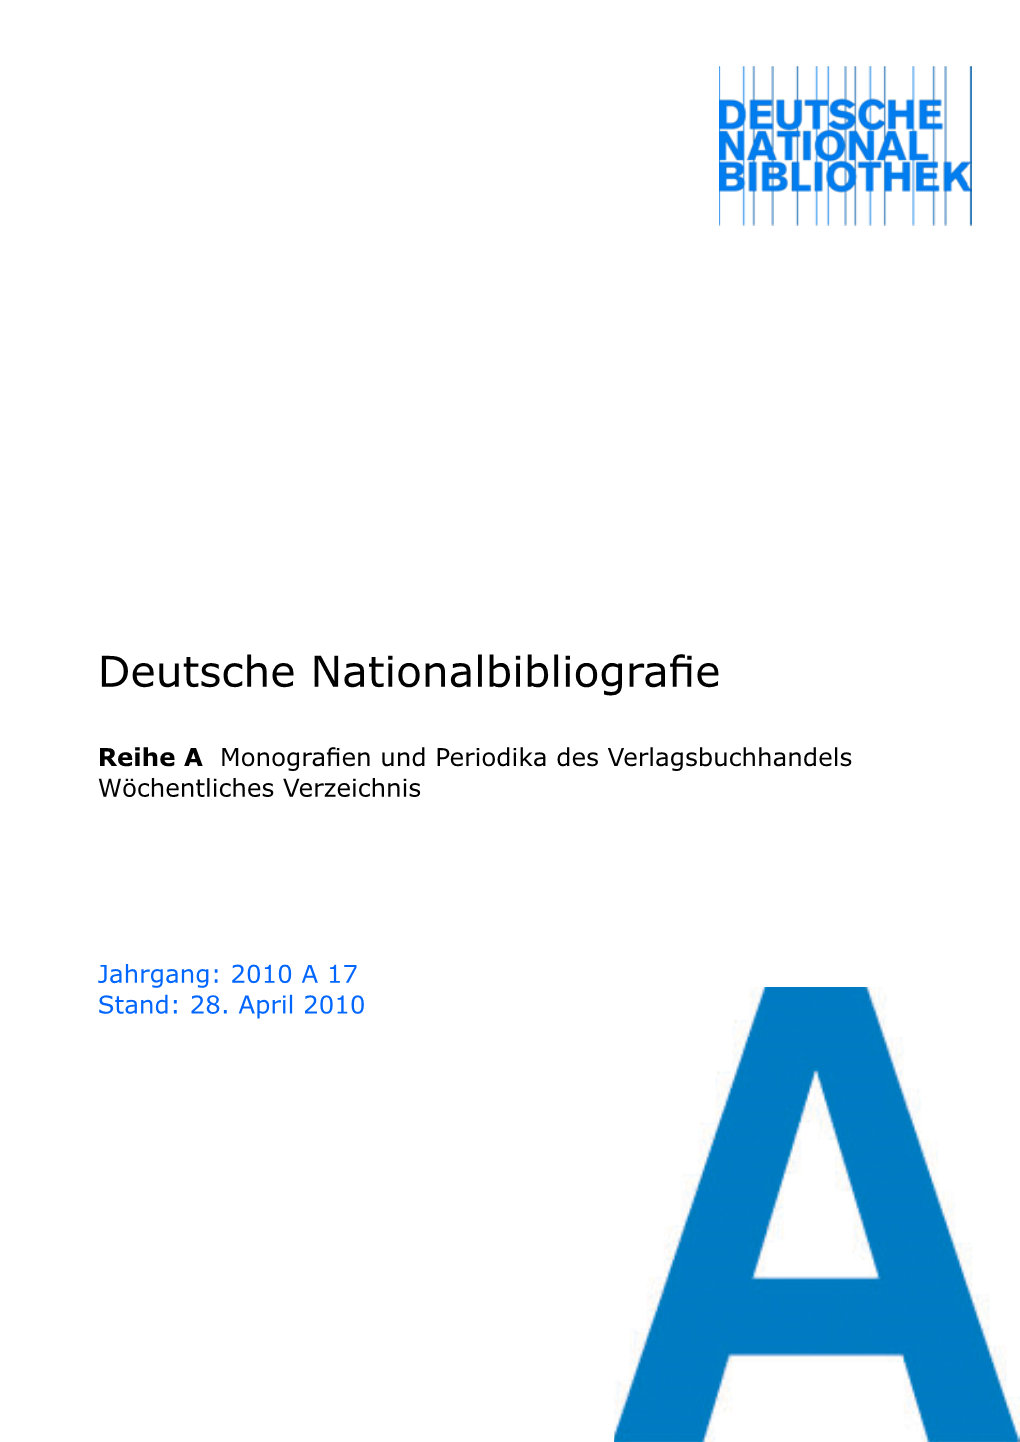 Deutsche Nationalbibliografie 2010 a 17